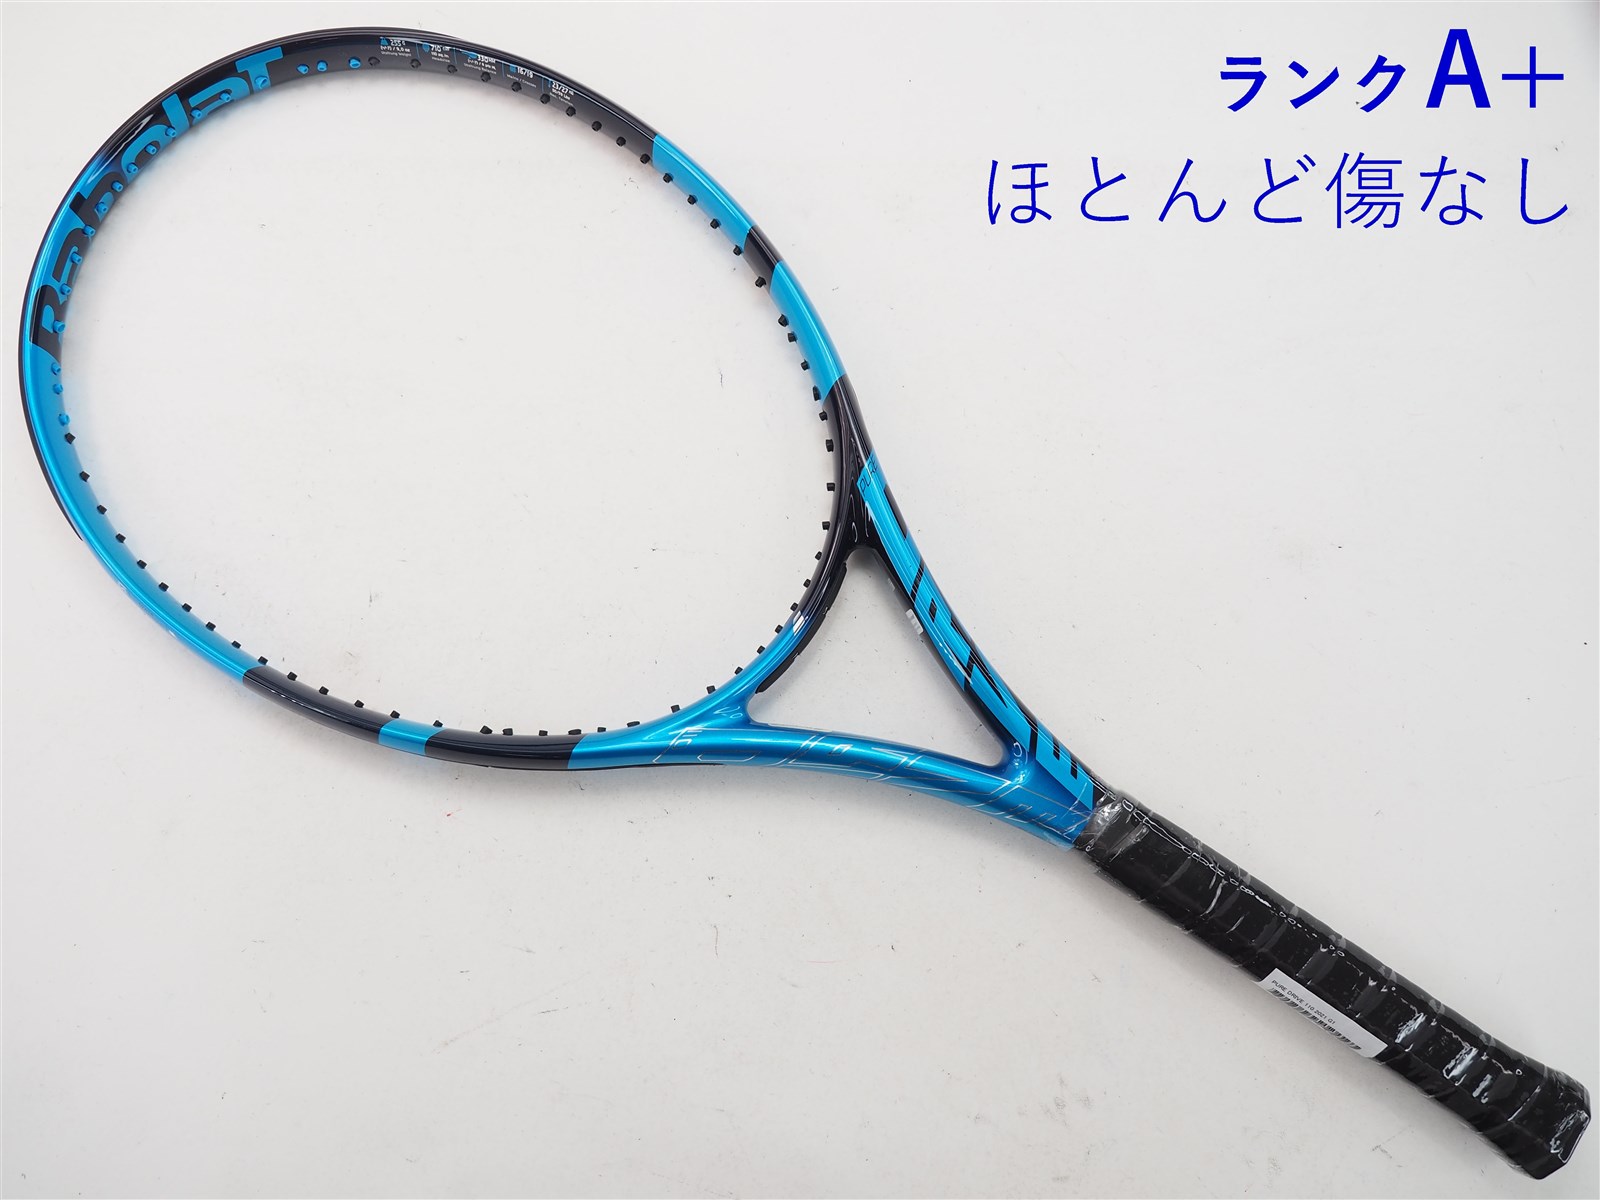 バボラ 2021ピュアドライブ 300g G2 硬式テニスラケット-